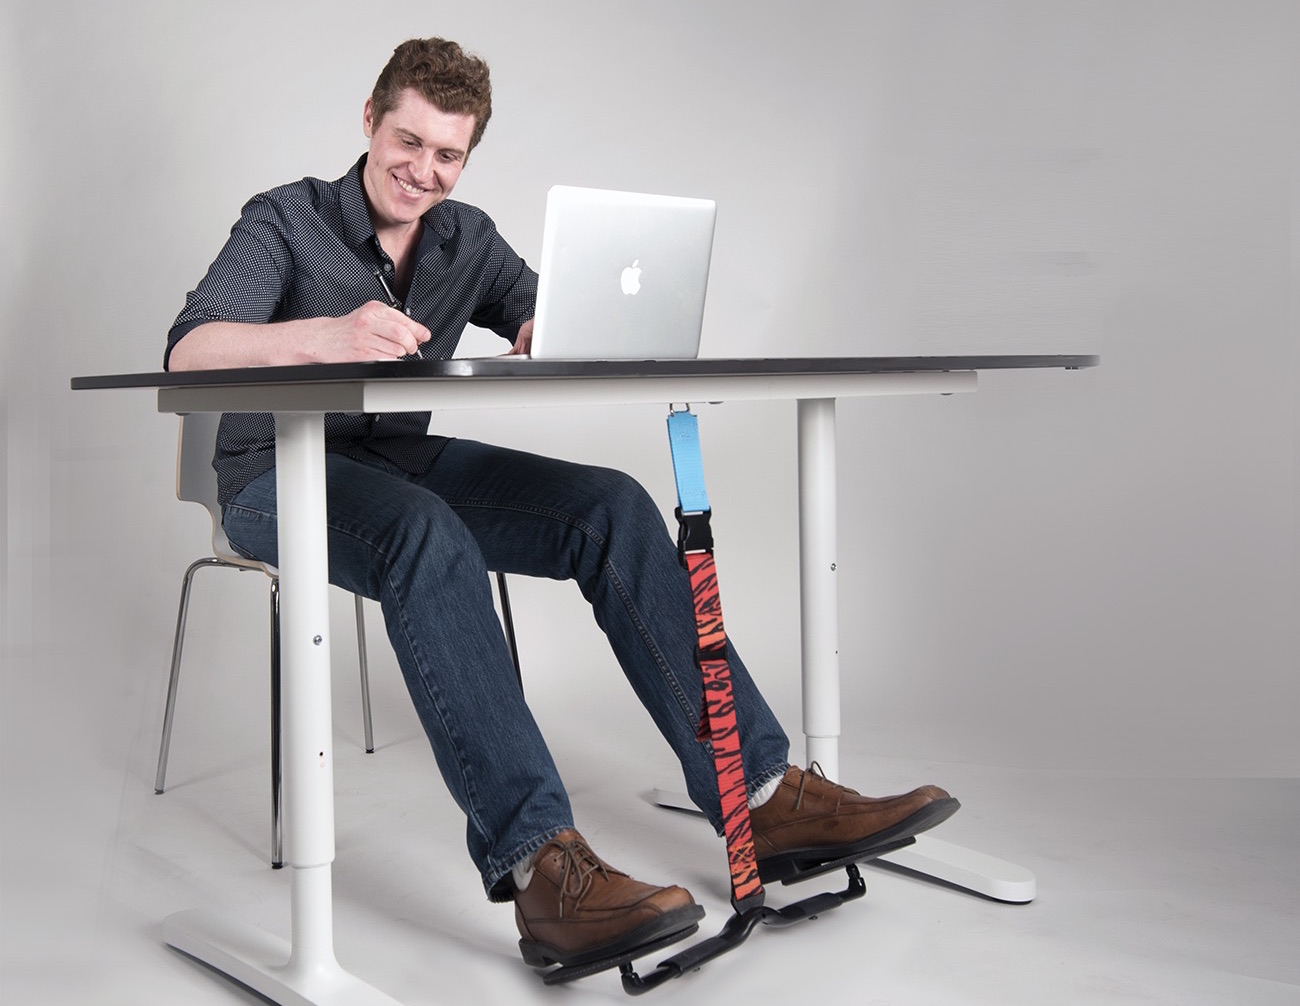 Footrest For Desk Leg Rest Under Desk Step Stool Stable Structure